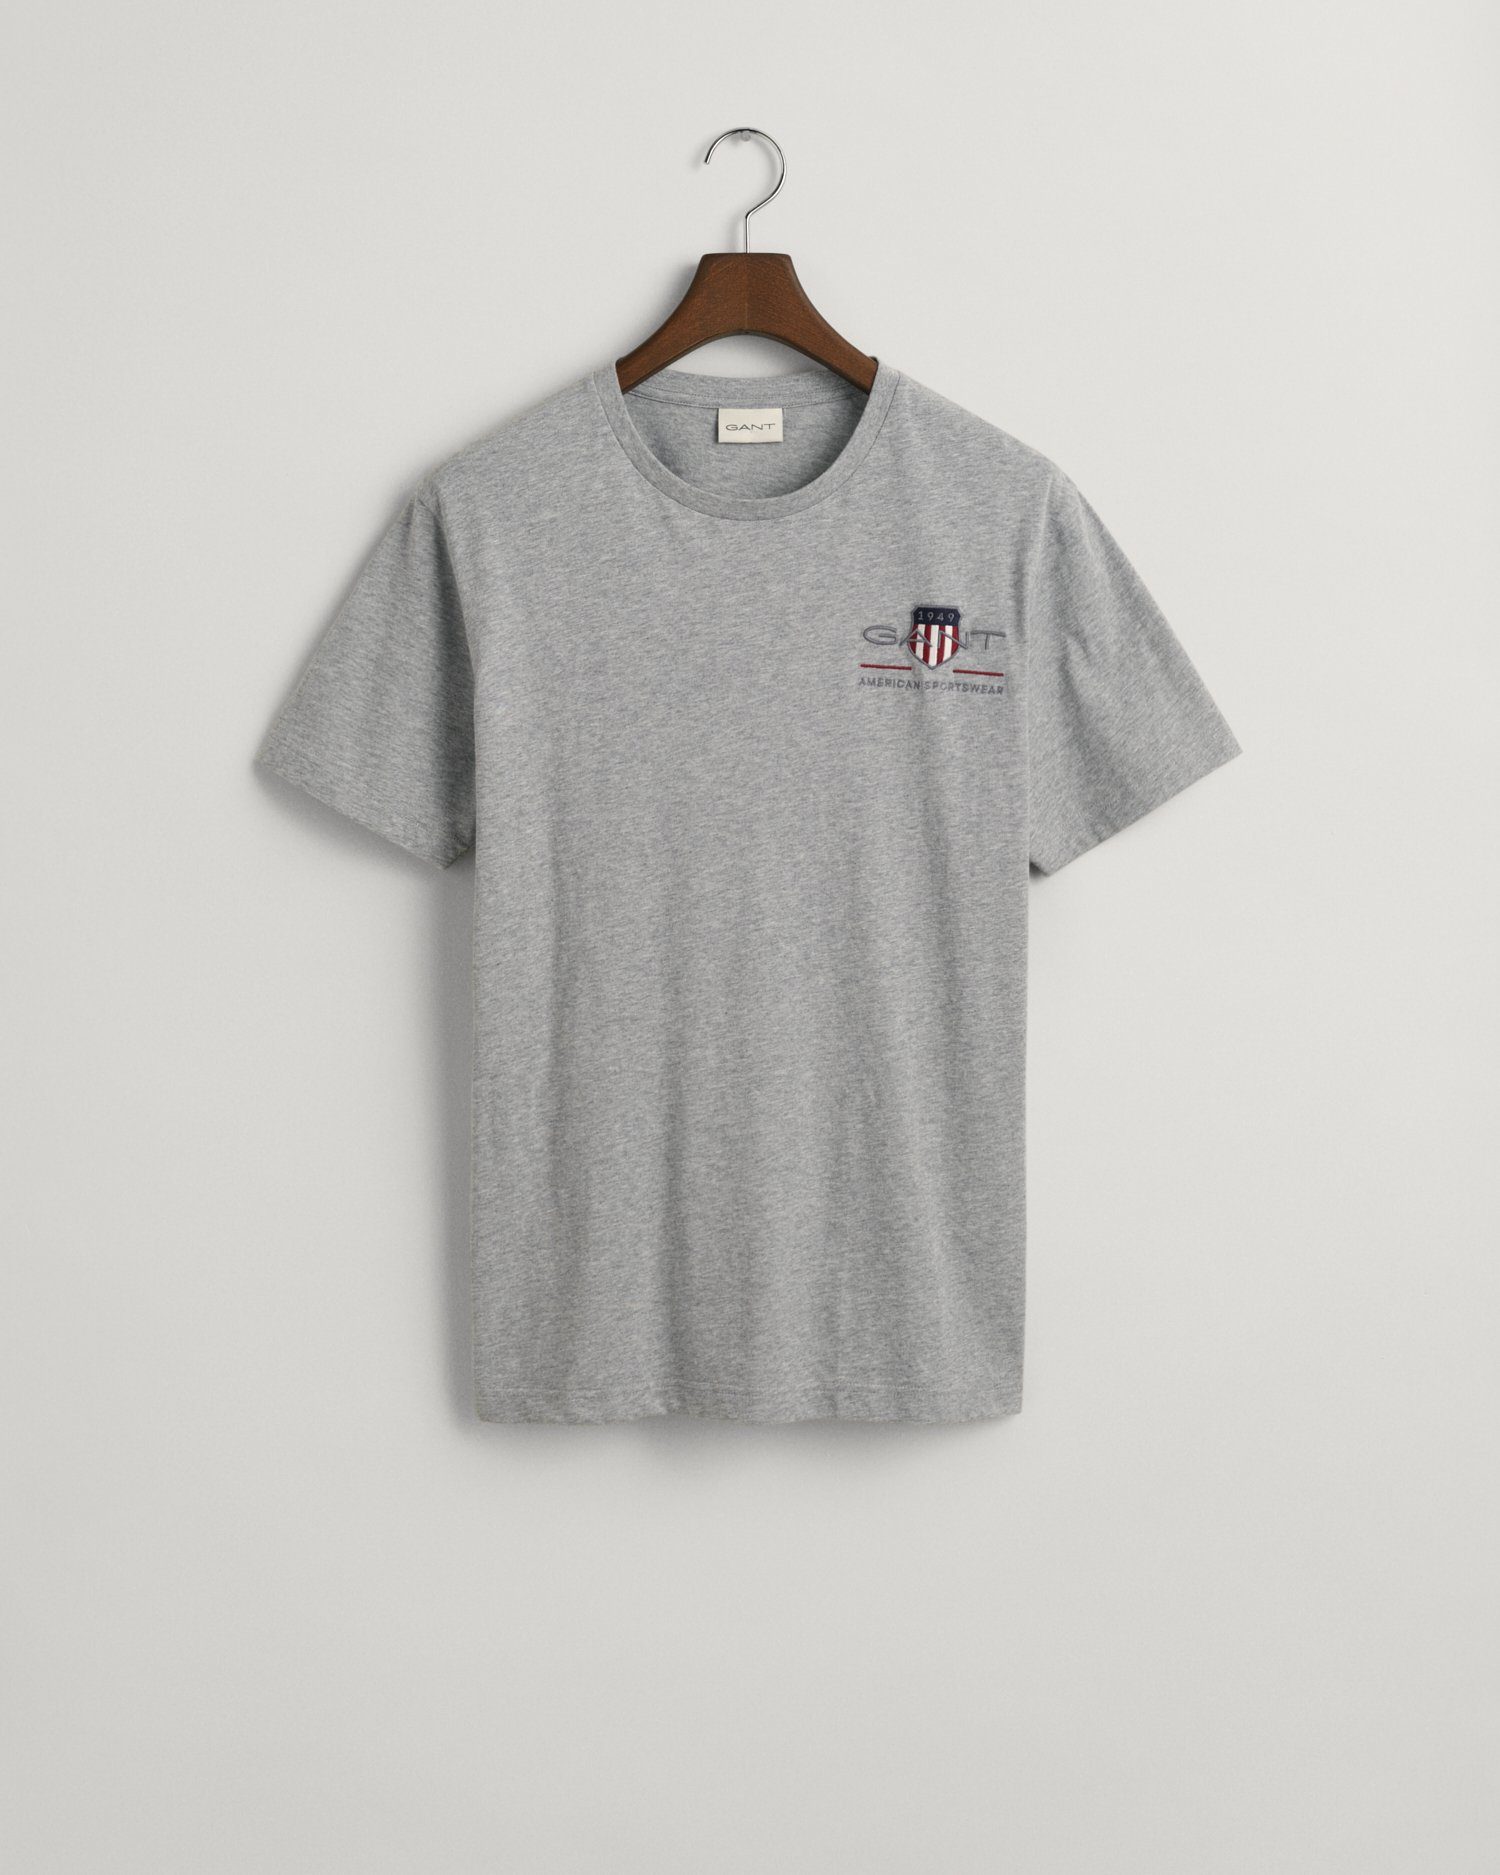 den T-SHIRT 1980er-Jahren Archiv aus melange EMB SS grey Gant inspiriert von T-Shirt SHIELD ARCHIVE REG dem